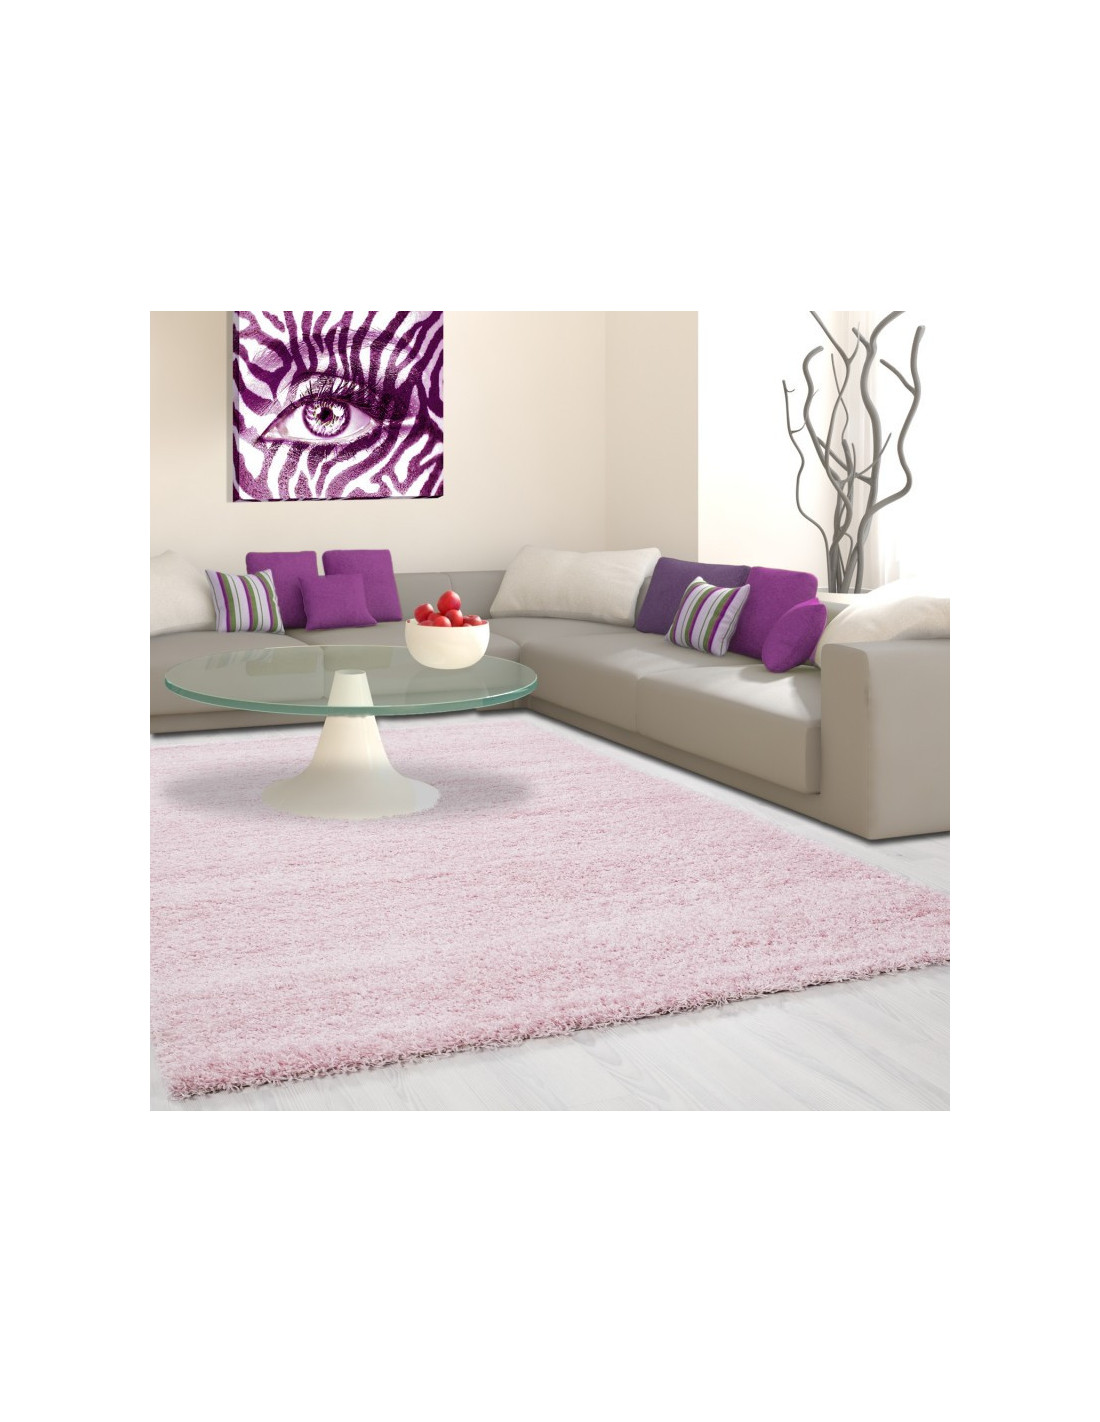 Hoogpolig tapijt, poolhoogte 3 cm, unikleur roze